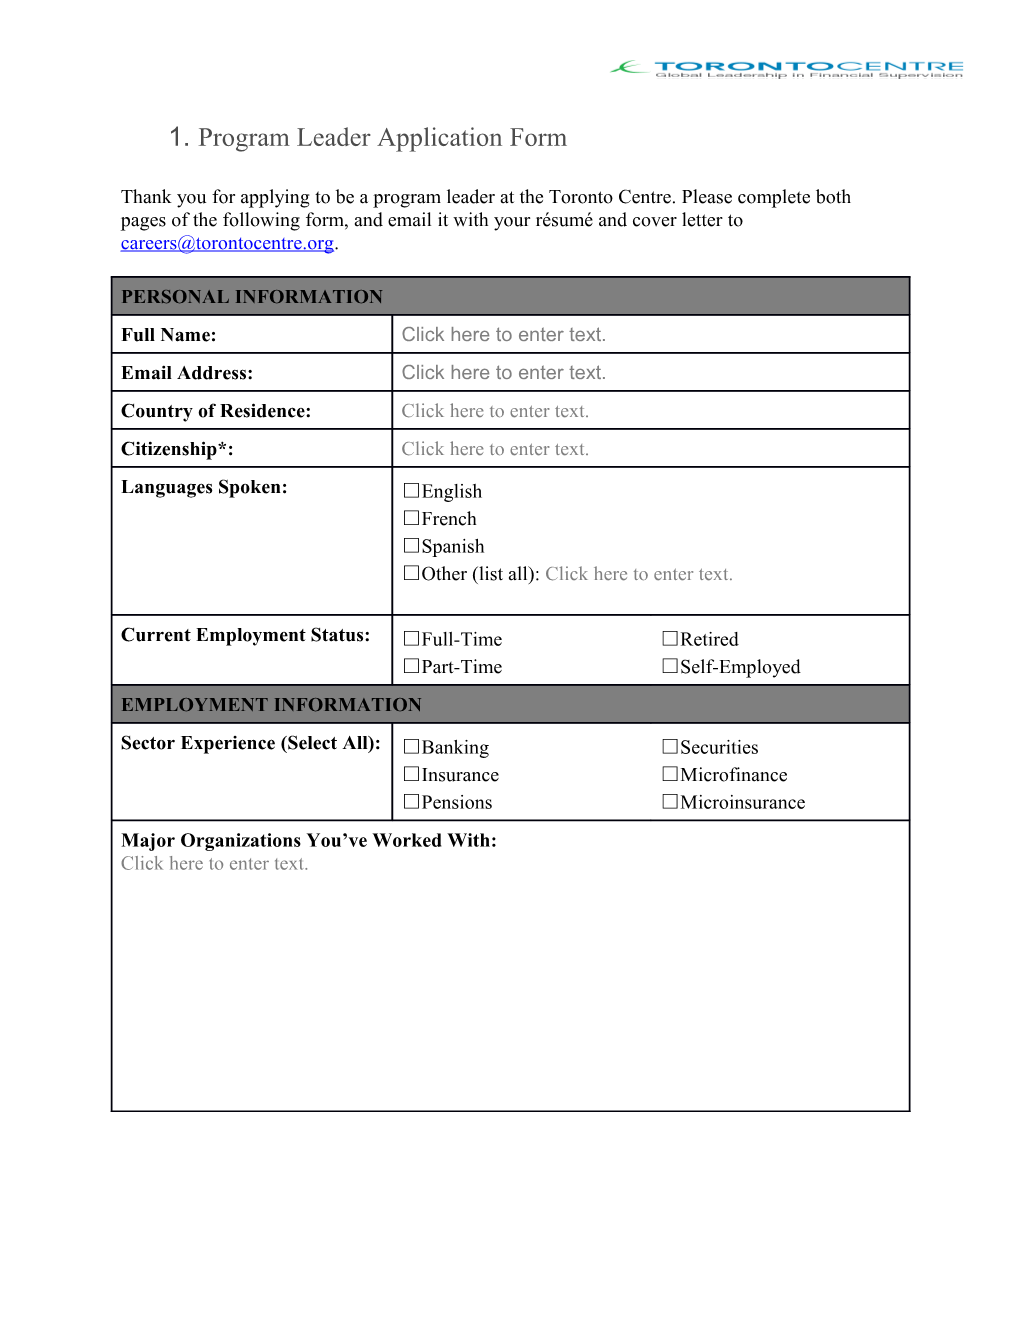 Program Leader Application Form